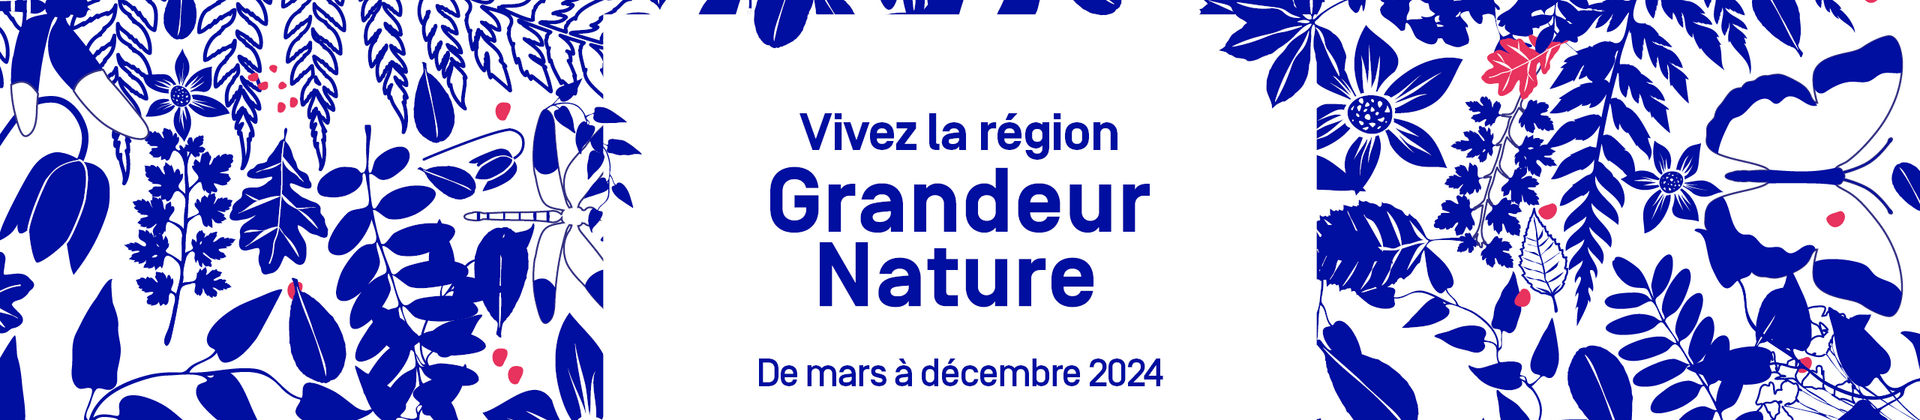 Vivez la région Grandeur Nature de mars à décembre 2024